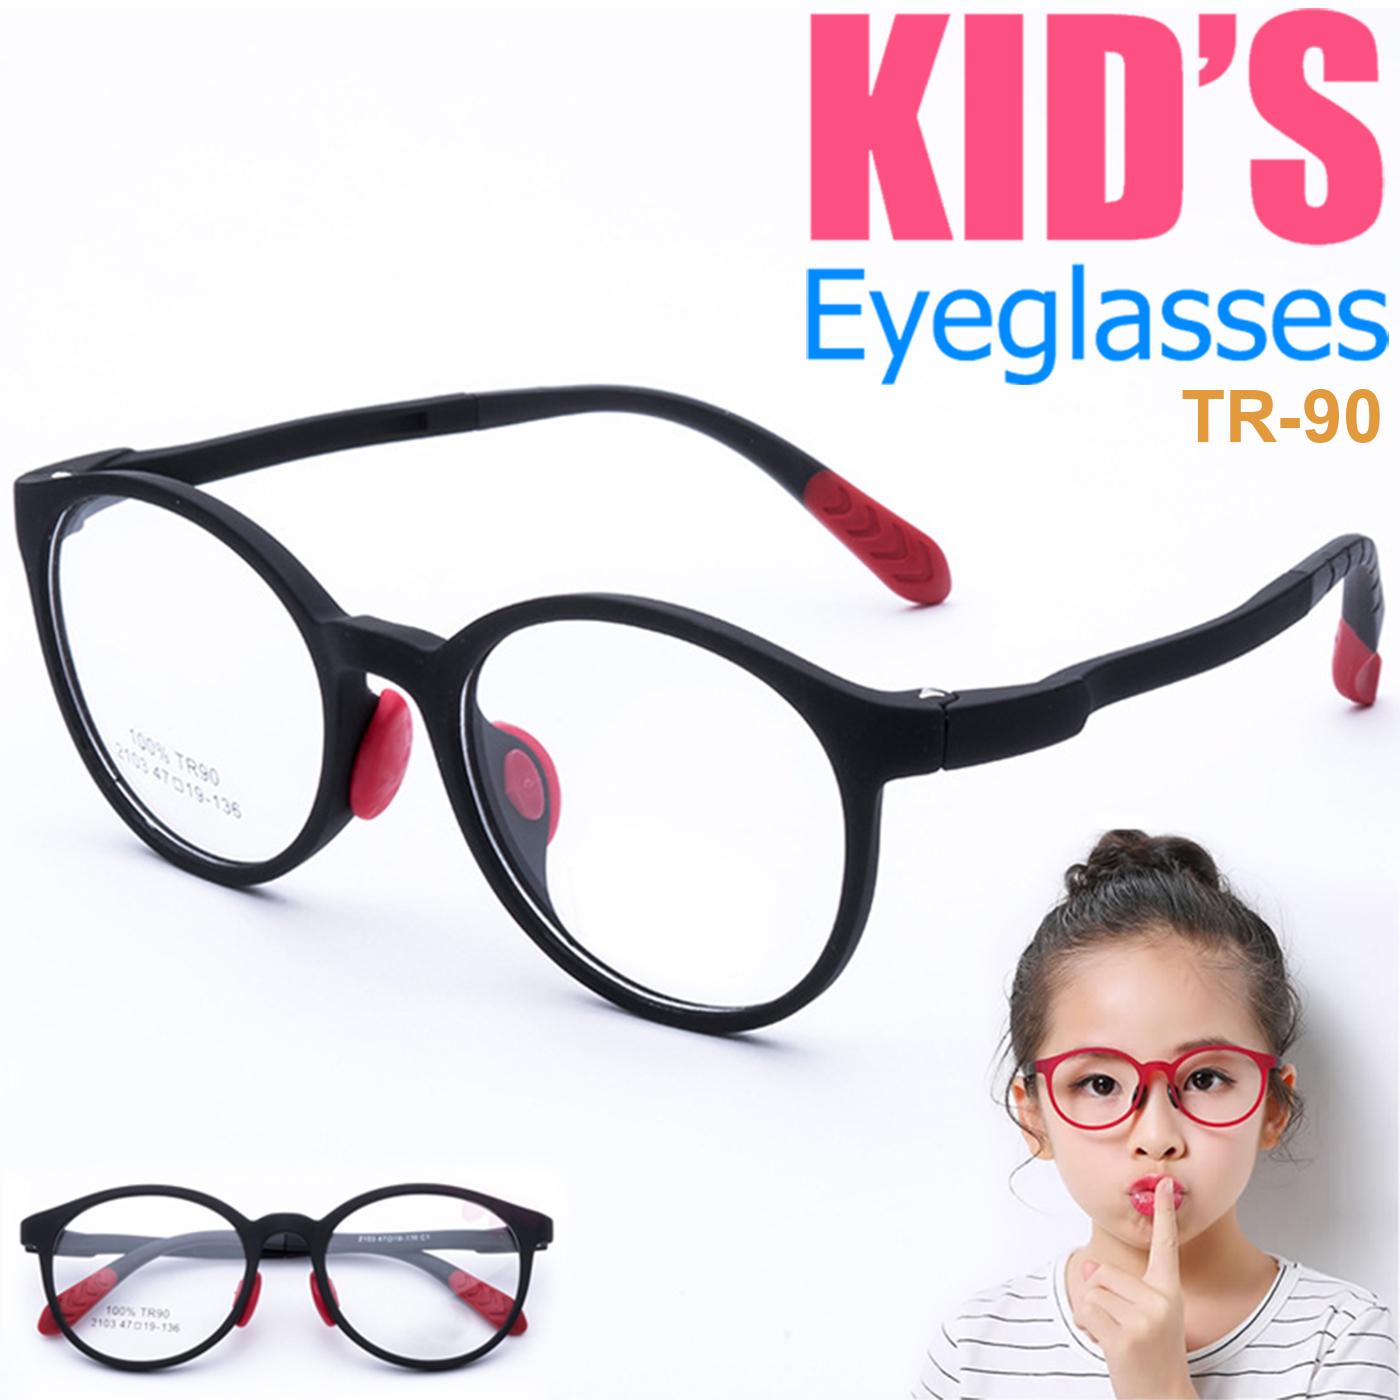 แว่นตาเกาหลีเด็ก Fashion Korea Children แว่นตาเด็ก รุ่น 2103 C-1 สีดำ กรอบแว่นตาเด็ก Round ทรงกลม Eyeglass baby frame ( สำหรับตัดเลนส์ ) วัสดุ TR-90 เบาและยืดหยุนได้สูง ขาข้อต่อ Kid eyewear Glasses